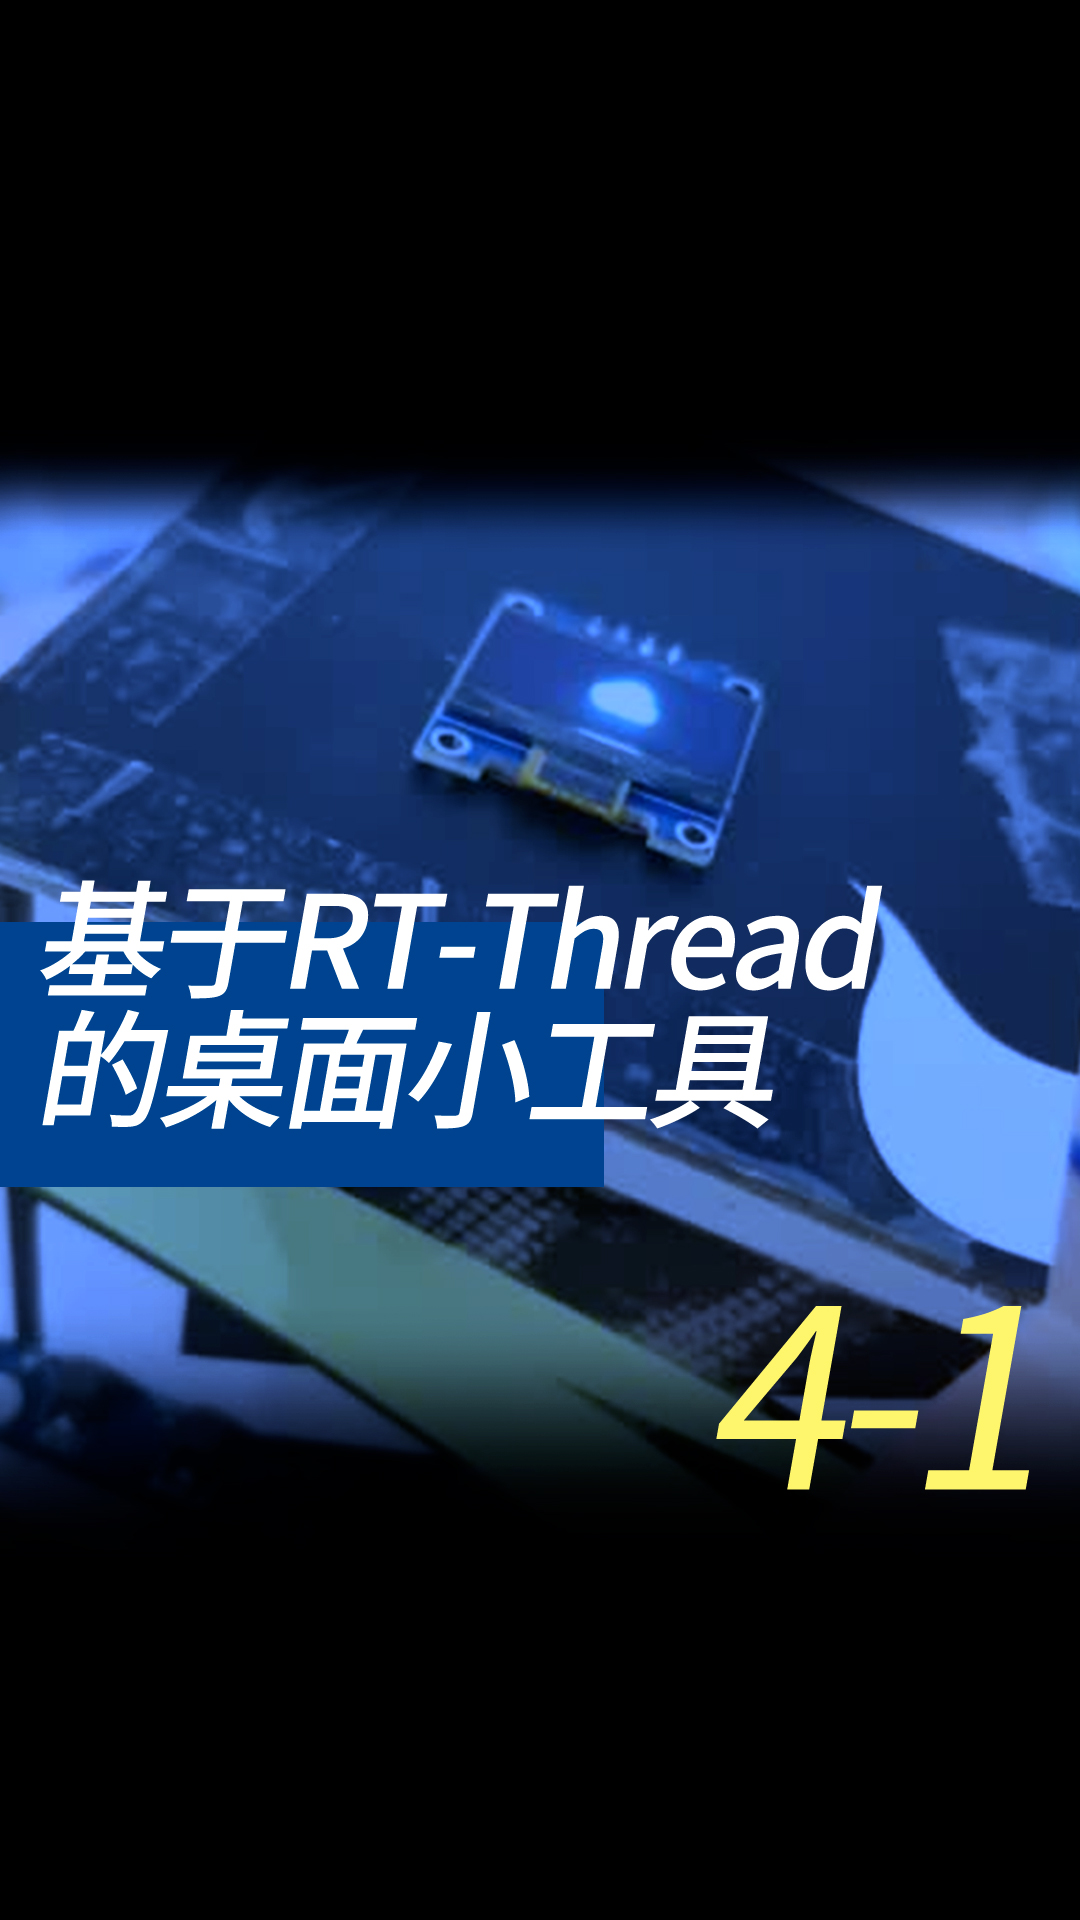 基于RT-Thread的桌面小工具 - 4-2-1git使用